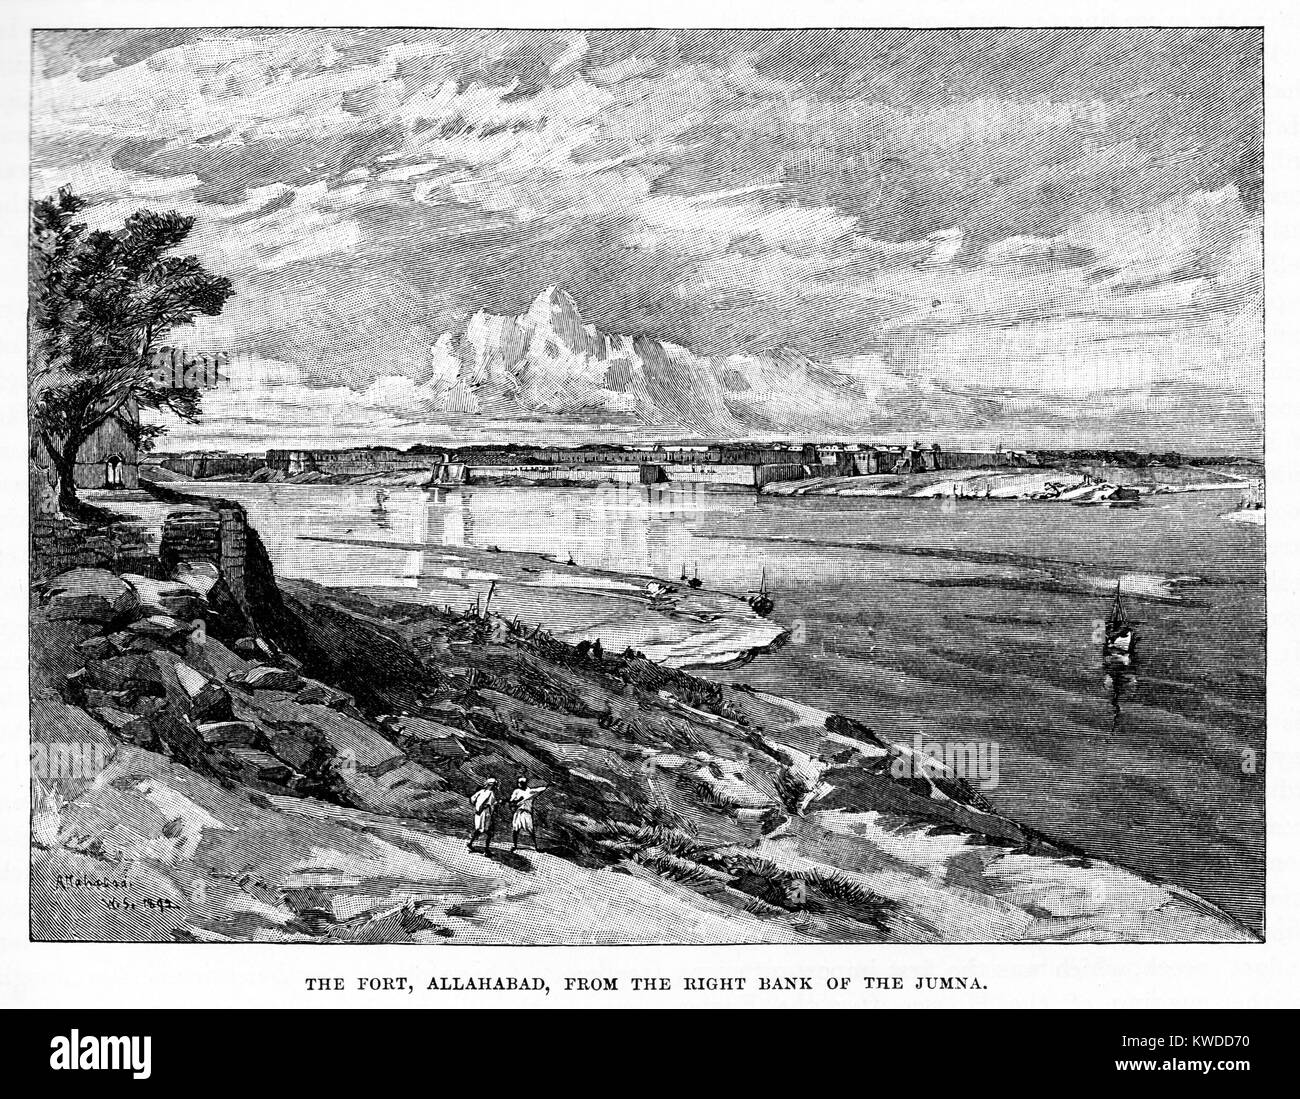 Das Fort, Allahabad vom rechten Ufer der jamna Fluss; 19. Jahrhundert schwarze und weiße Gravur Stockfoto